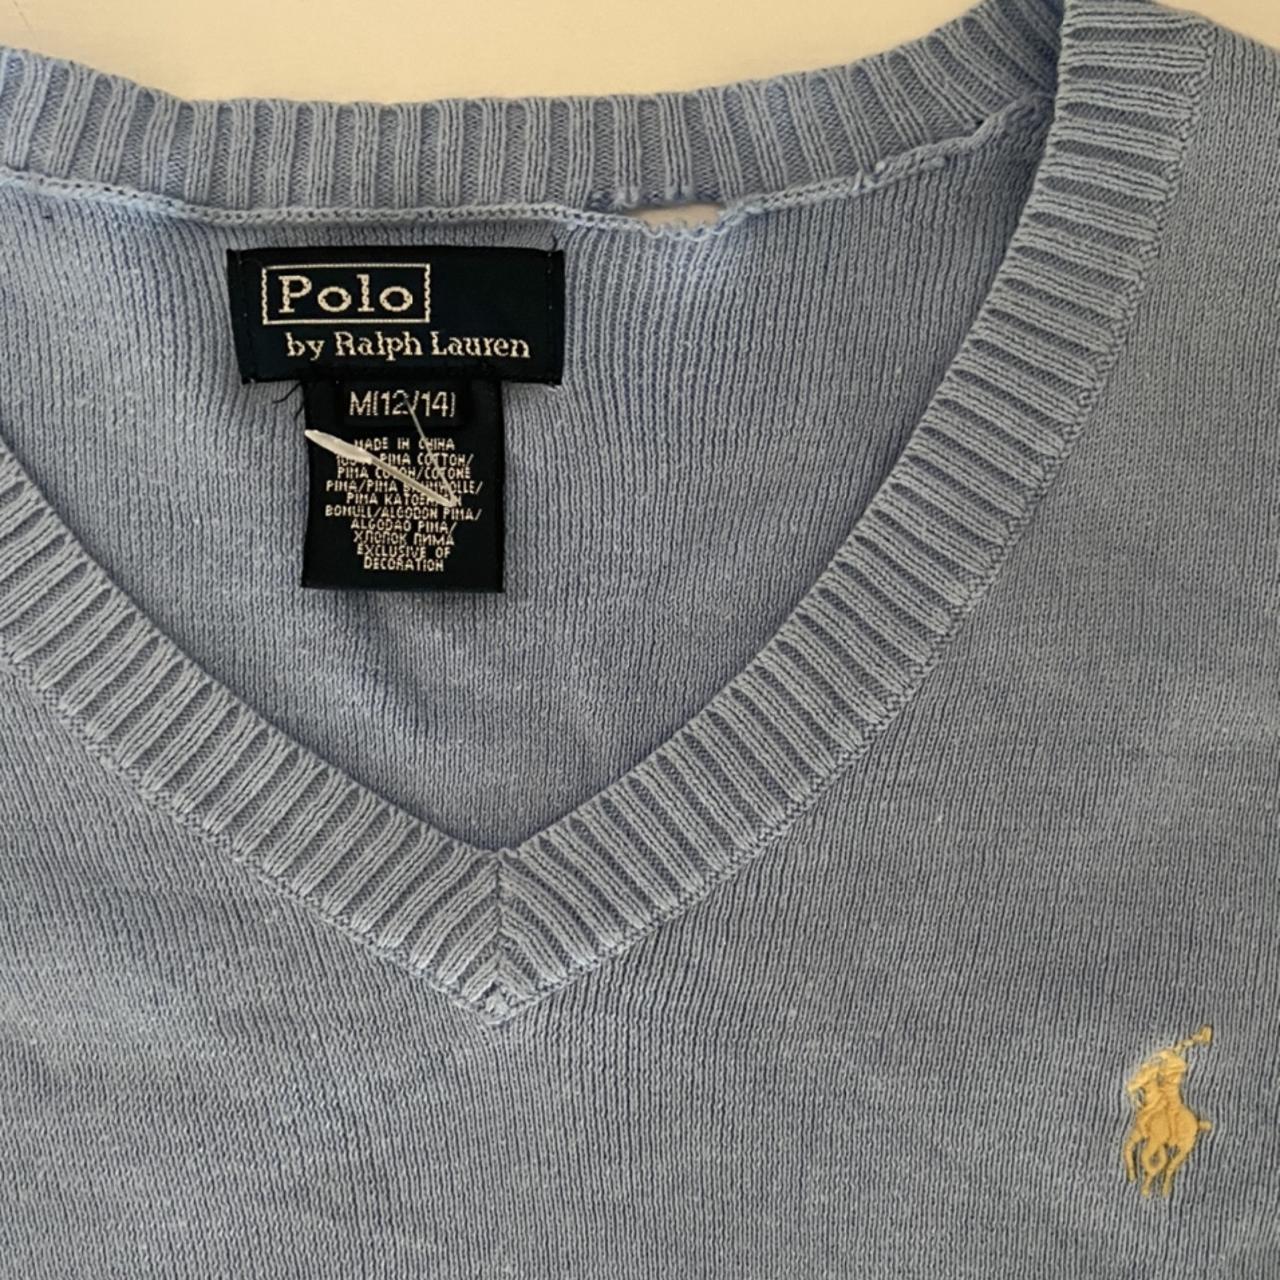 Nicest baby blue Ralph Lauren sweatshirt Perfect... - Depop